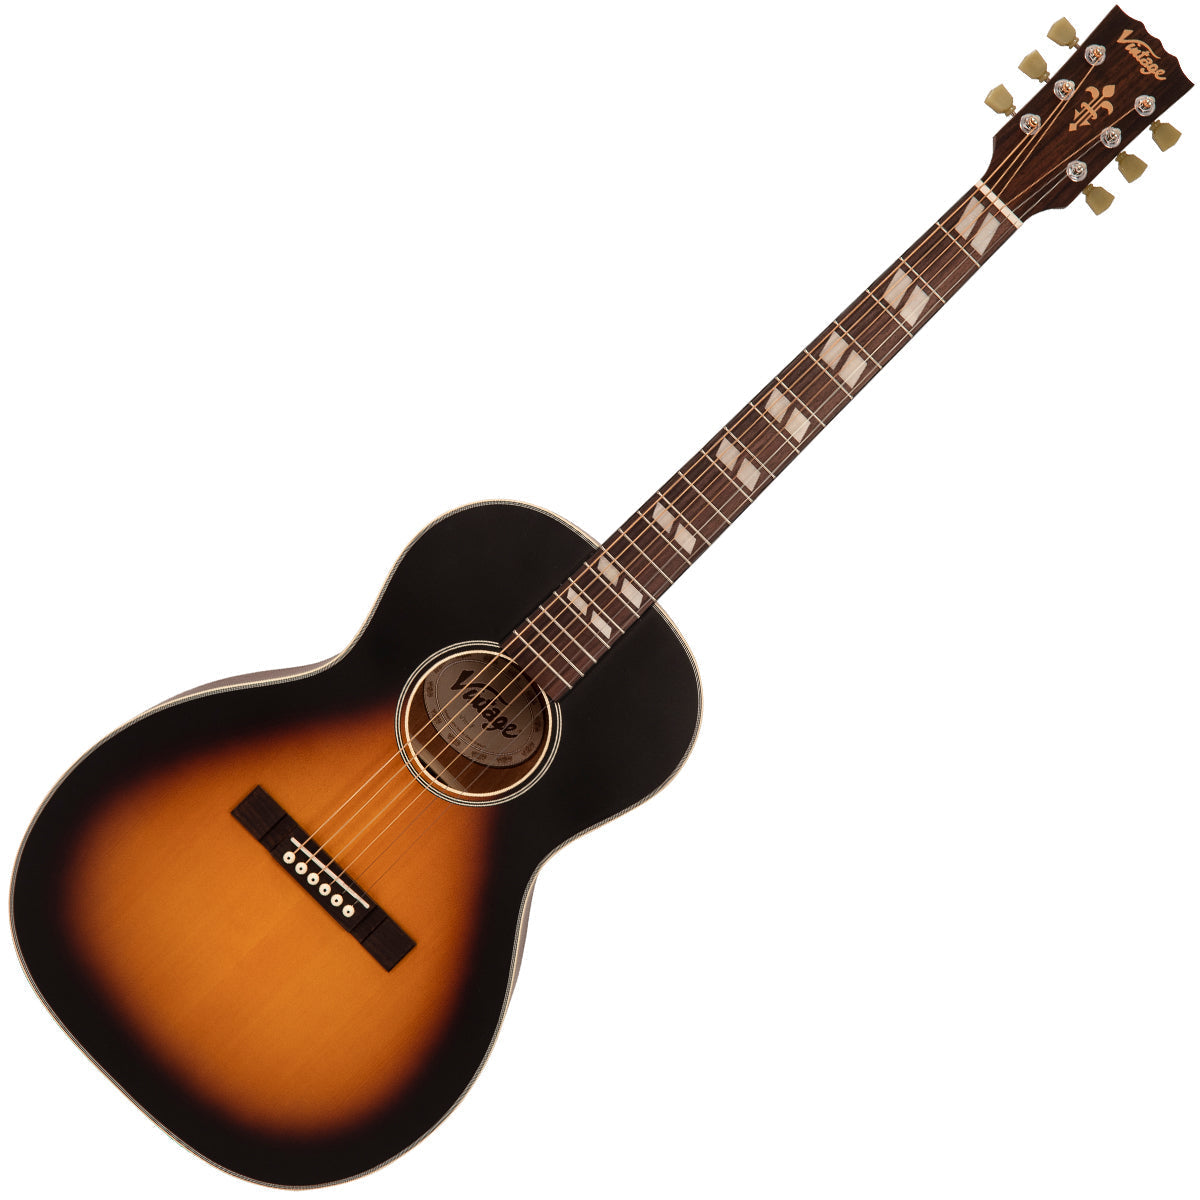 Vintage Historic Series 'Parlour' Acoustic Guitar ~ Vintage Sunburst, Acoustic Guitars for sale at Richards Guitars.